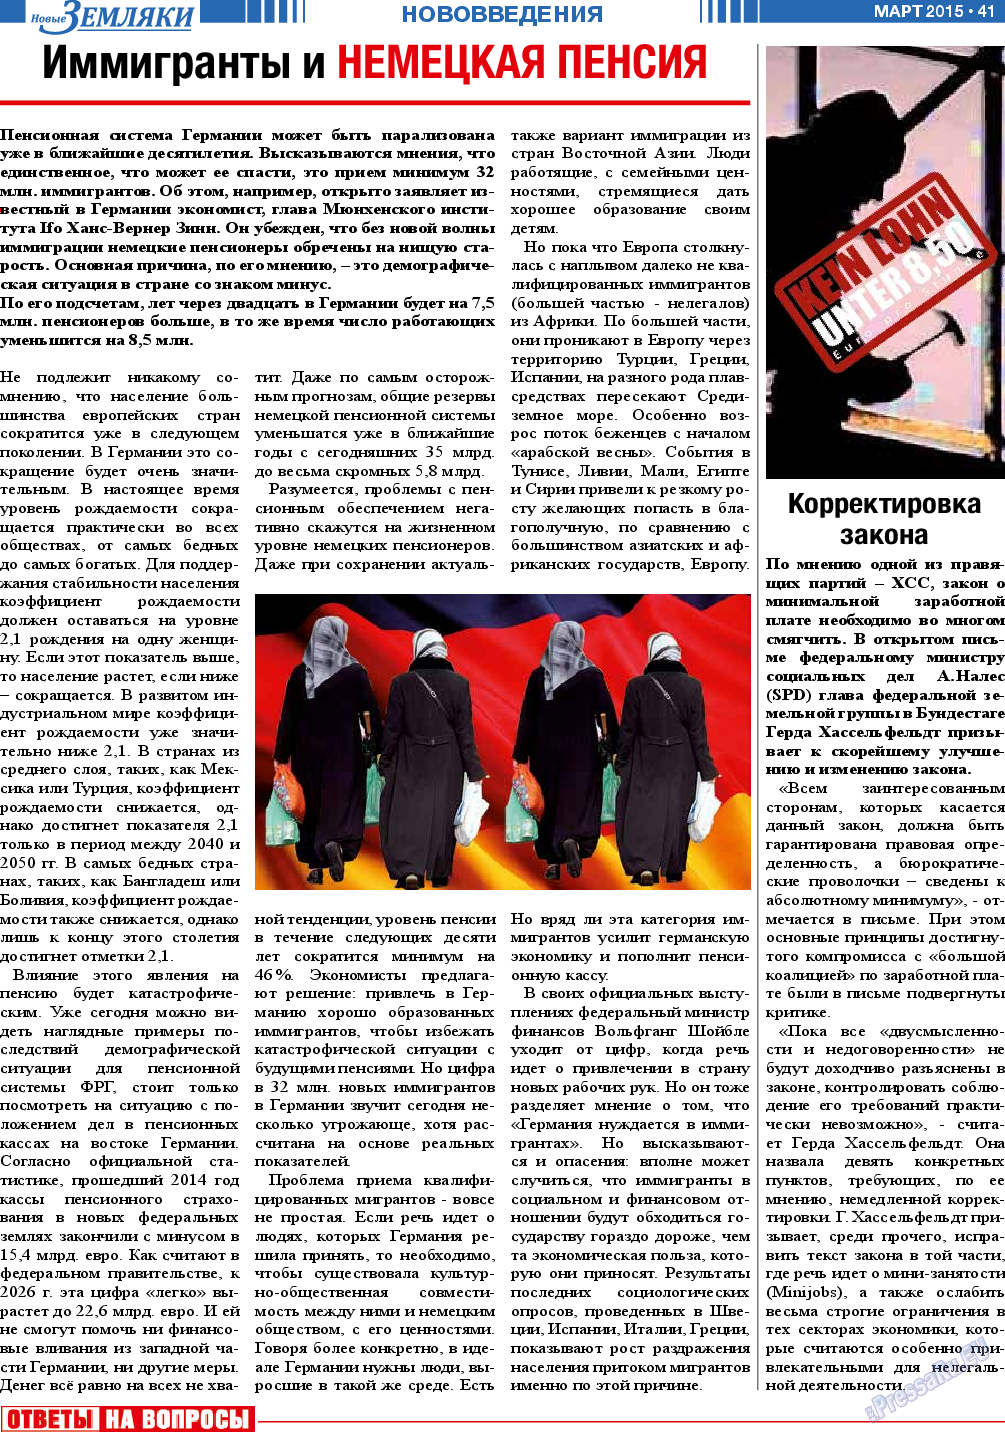 Новые Земляки, газета. 2015 №3 стр.41